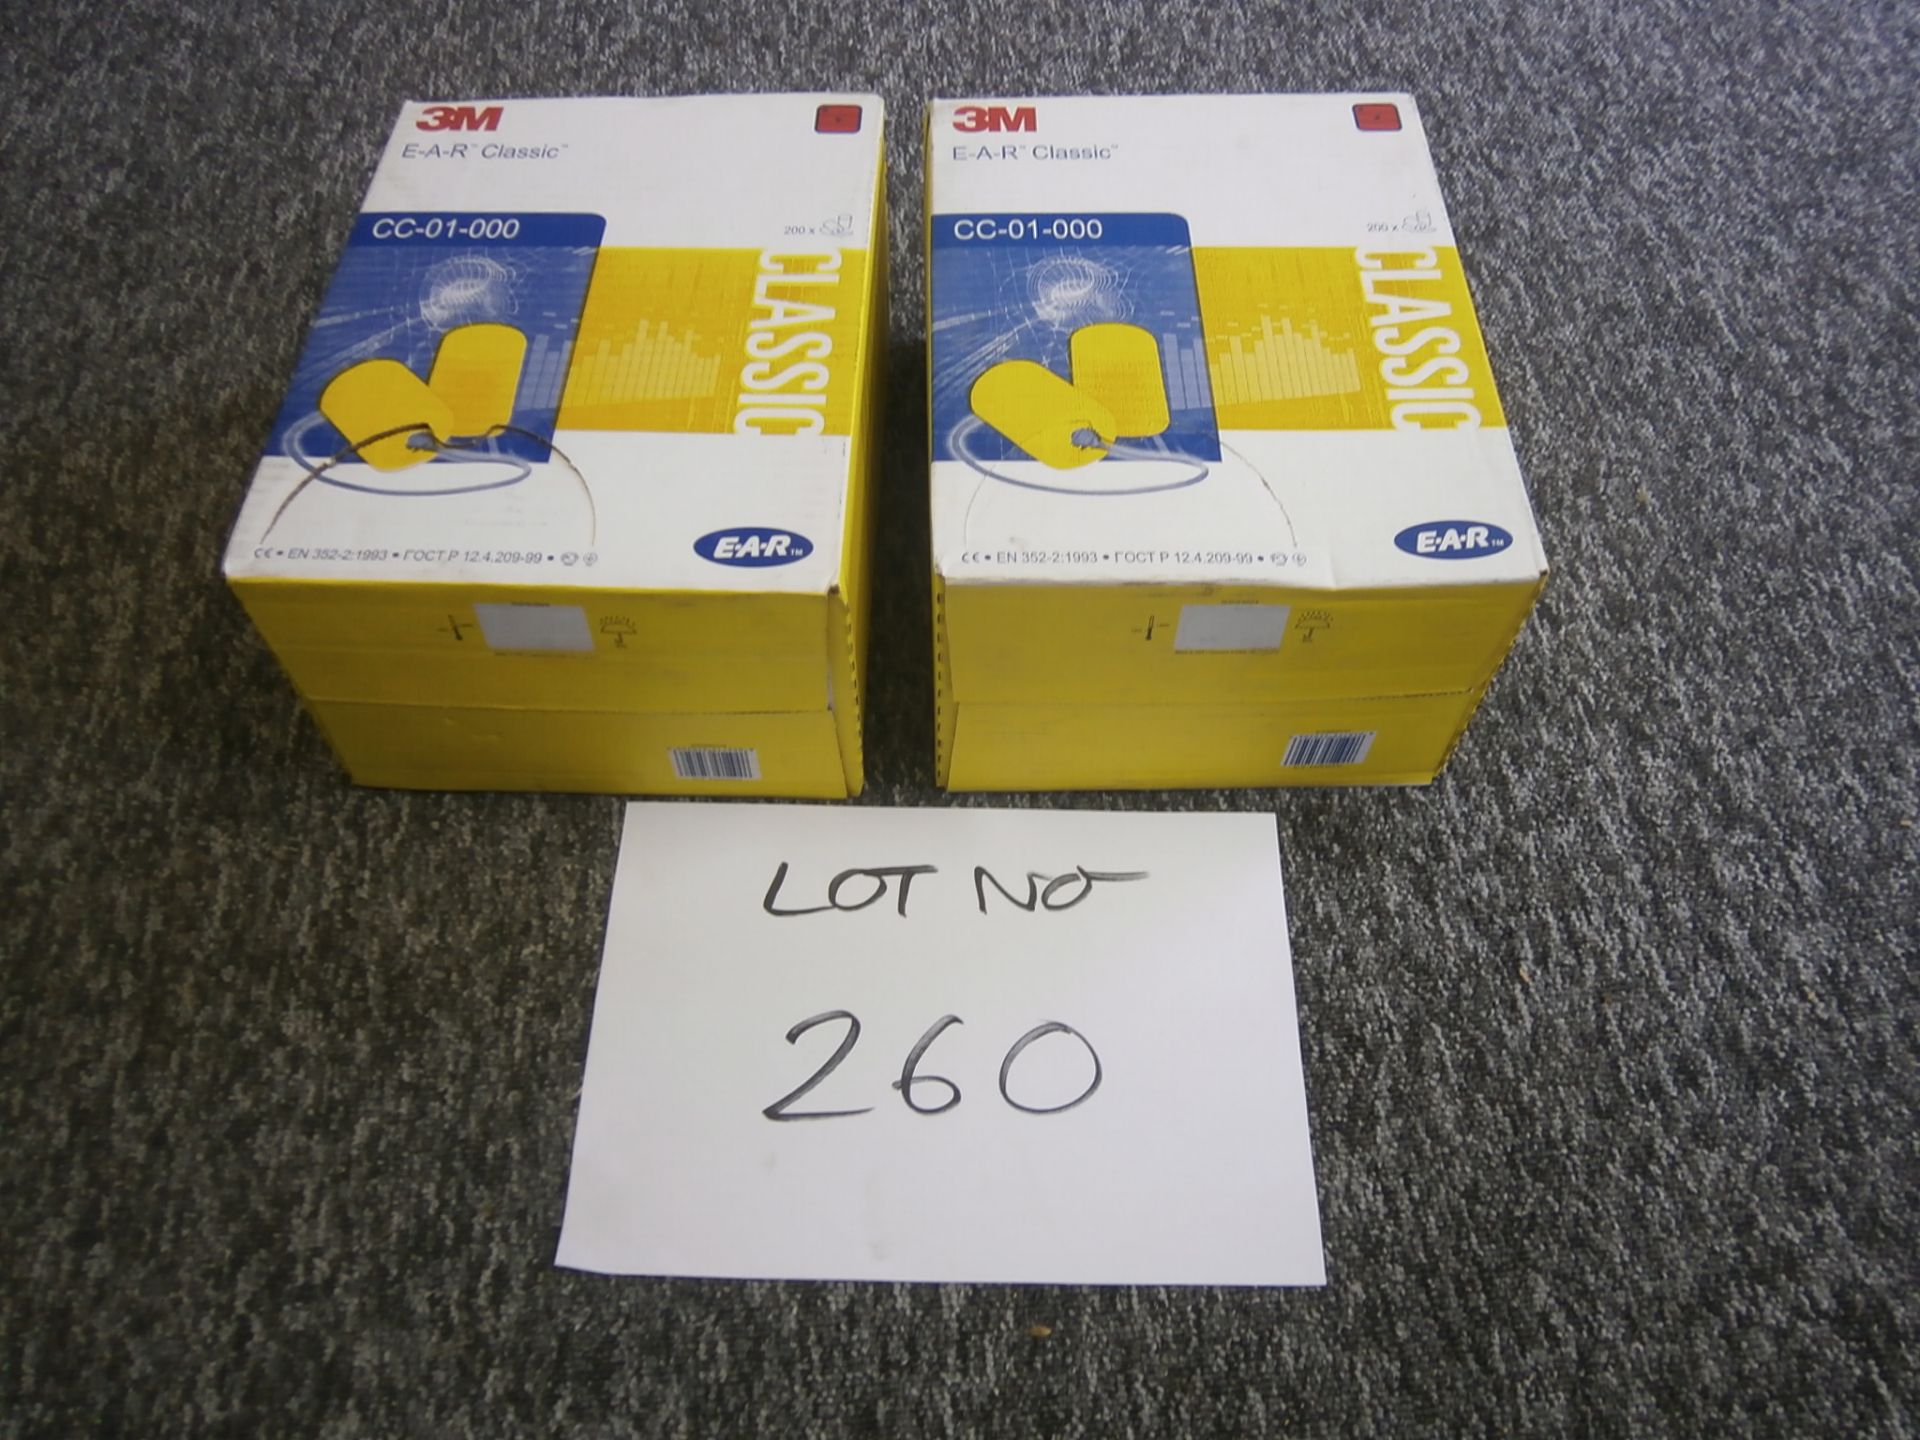 2 x Boxes of 3M CC-01-000 Plastic Ear Protectors (200 Pairs Per Box - RRP £57.82 Per Box) (RB)